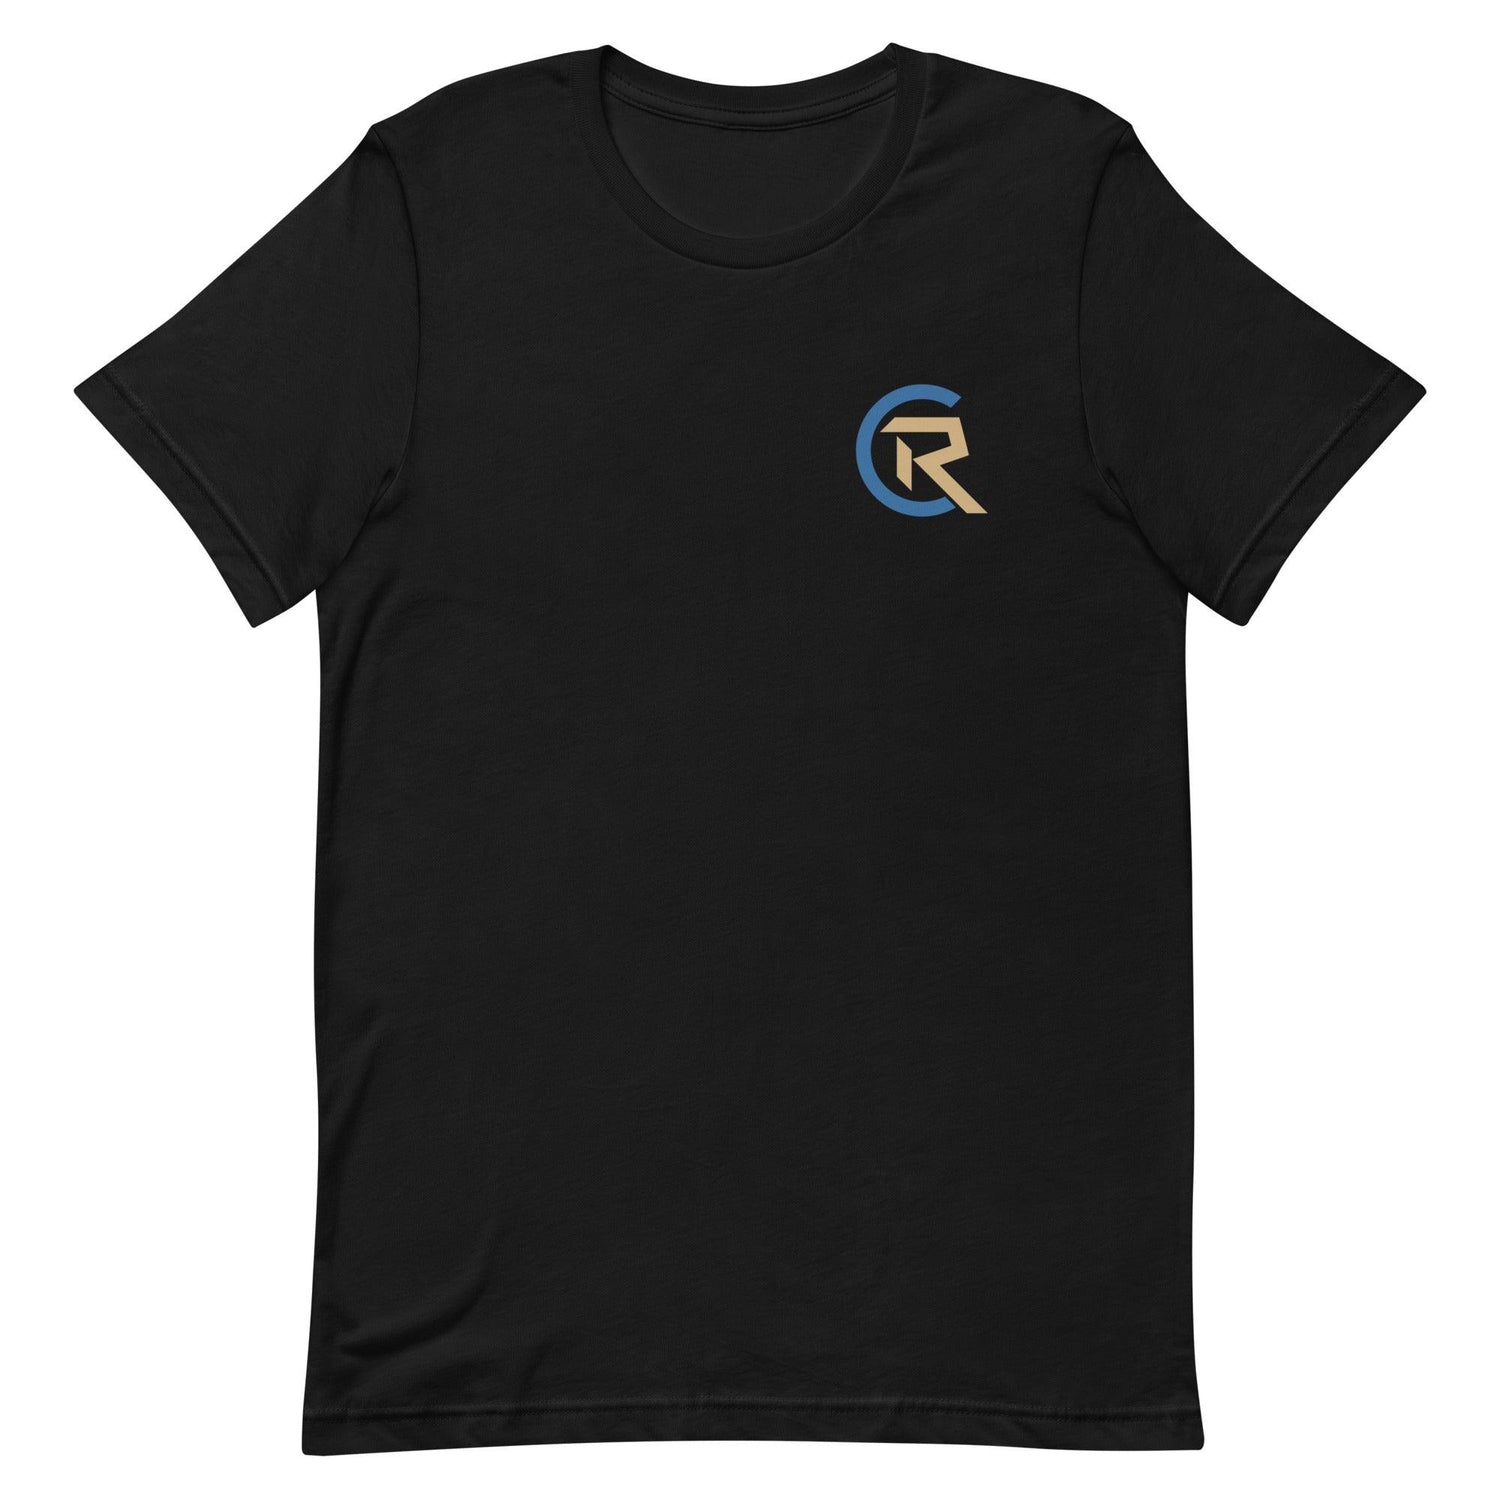 Cole Ragans "CR" t-shirt - Fan Arch